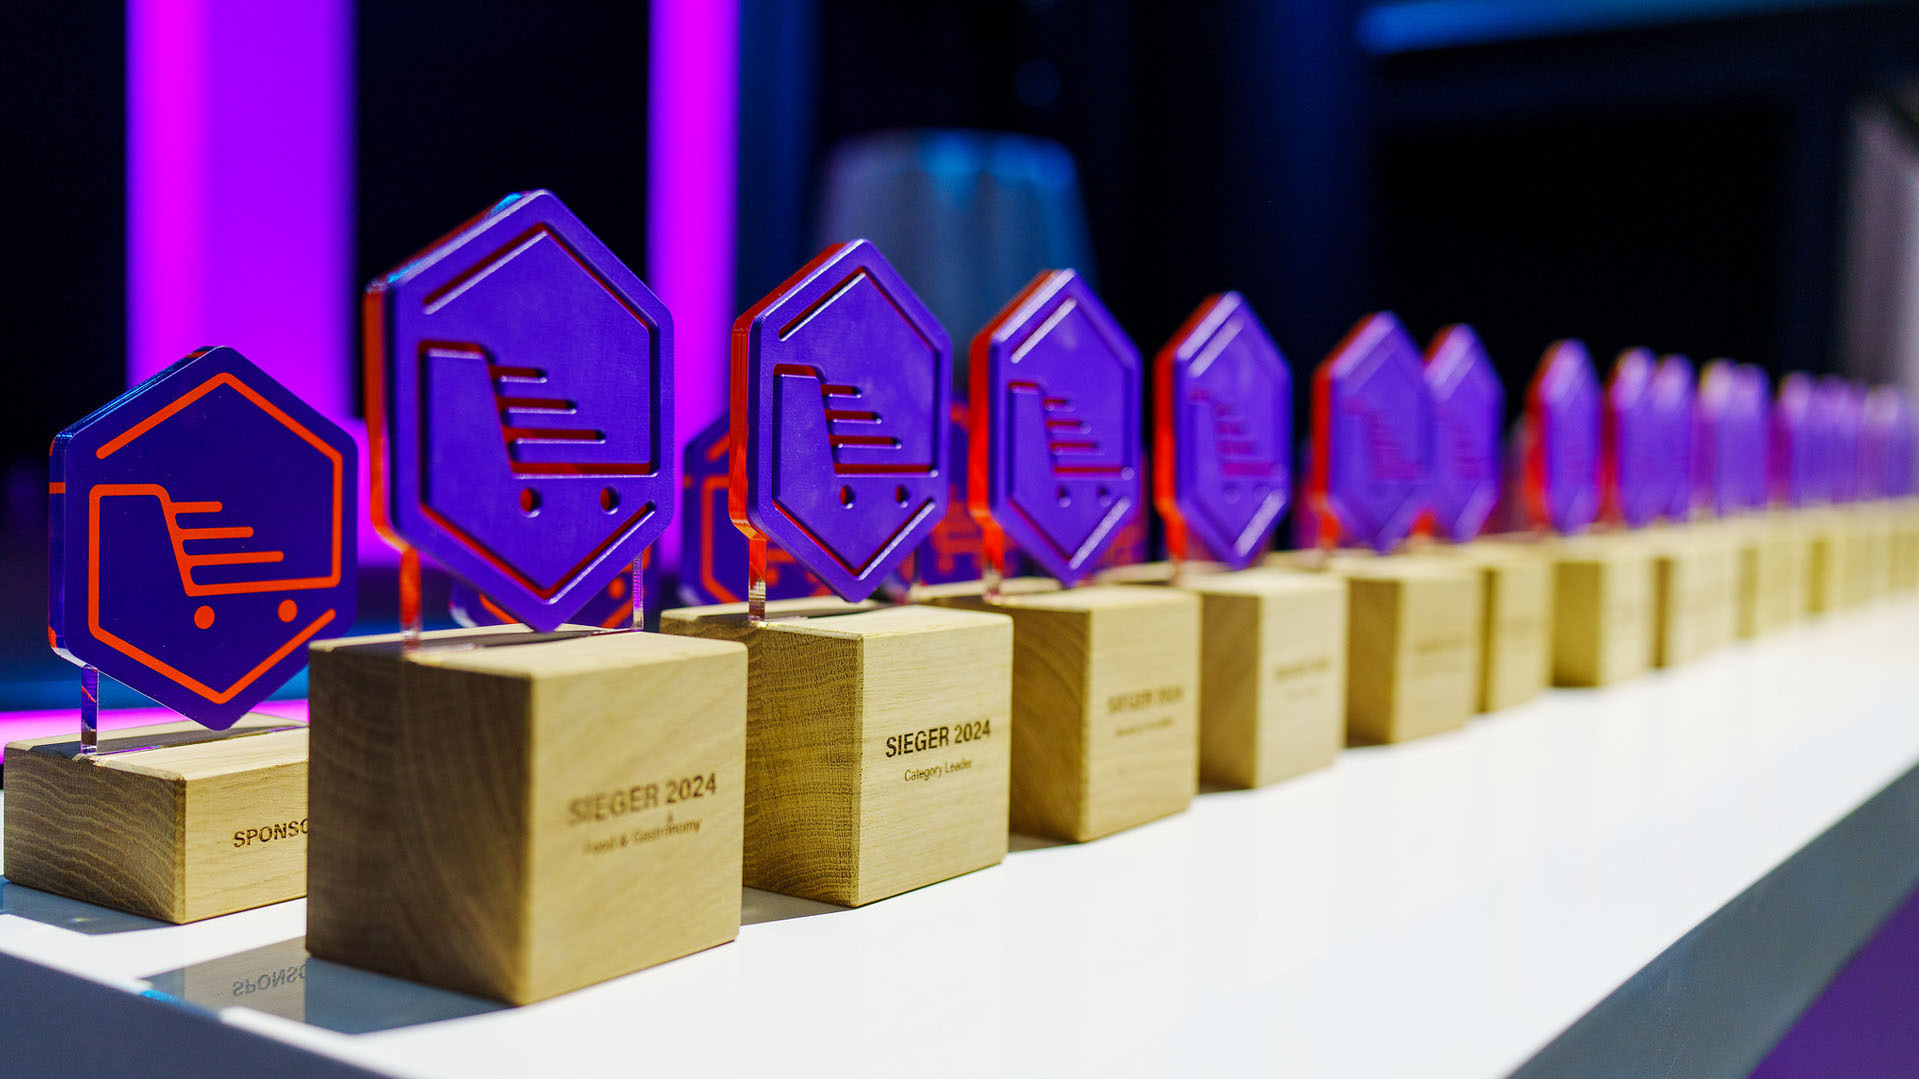 Feey, Bühler und Livom mit Digital Commerce Awards ausgezeichnet